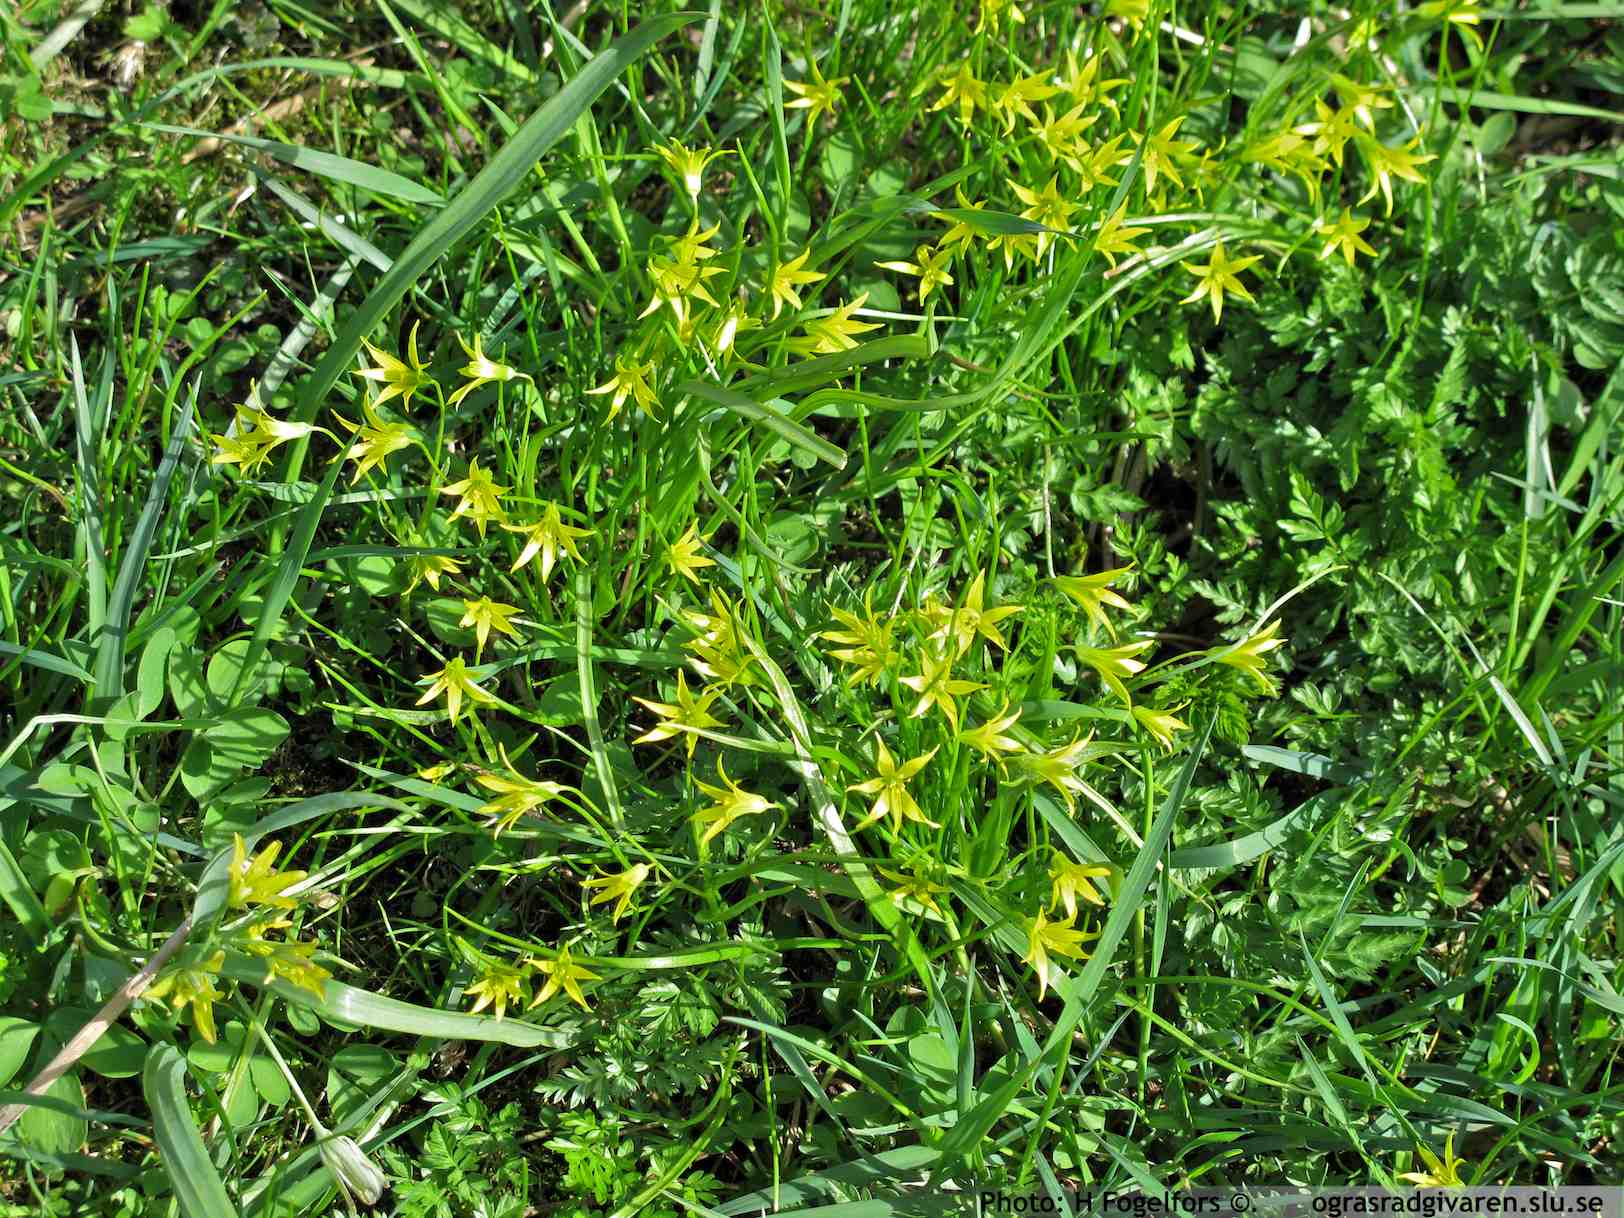 Blommande bestånd av dvärgvårlök (trådfina blad) i betesmark och den grövre vårlöken (G. lutea) till vänster och nedtill i bild.